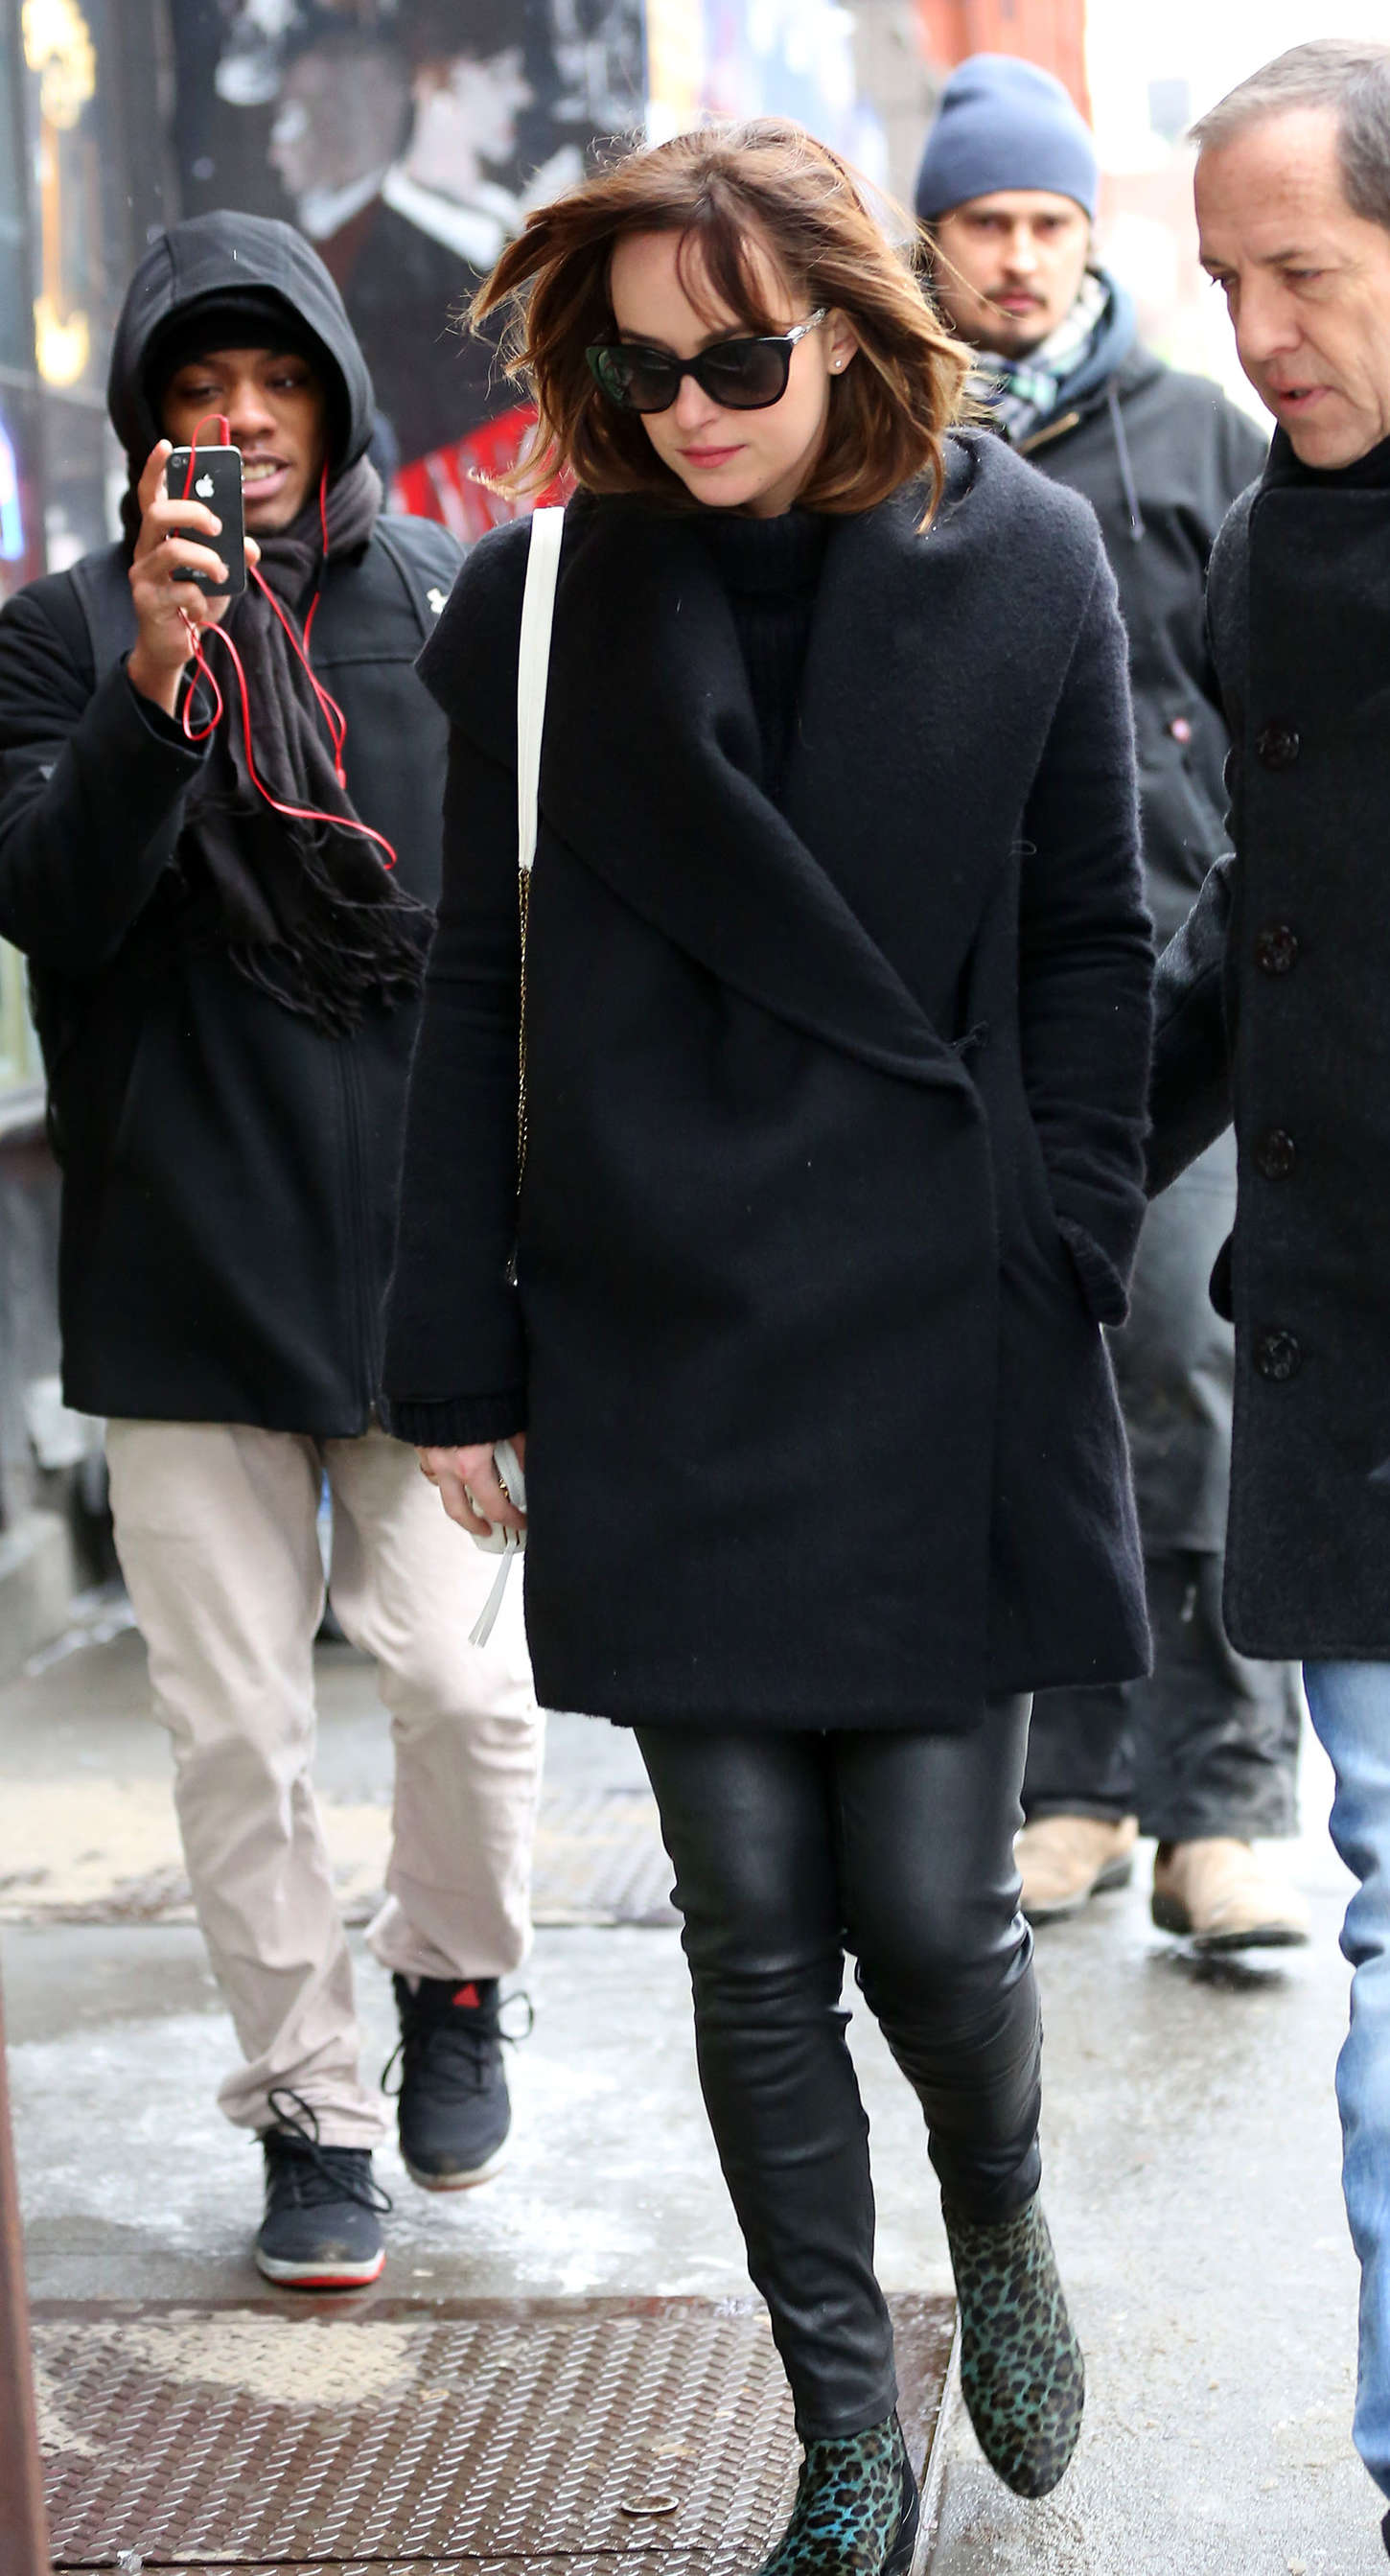 Dakota Johnson was seen walking around Manhattan